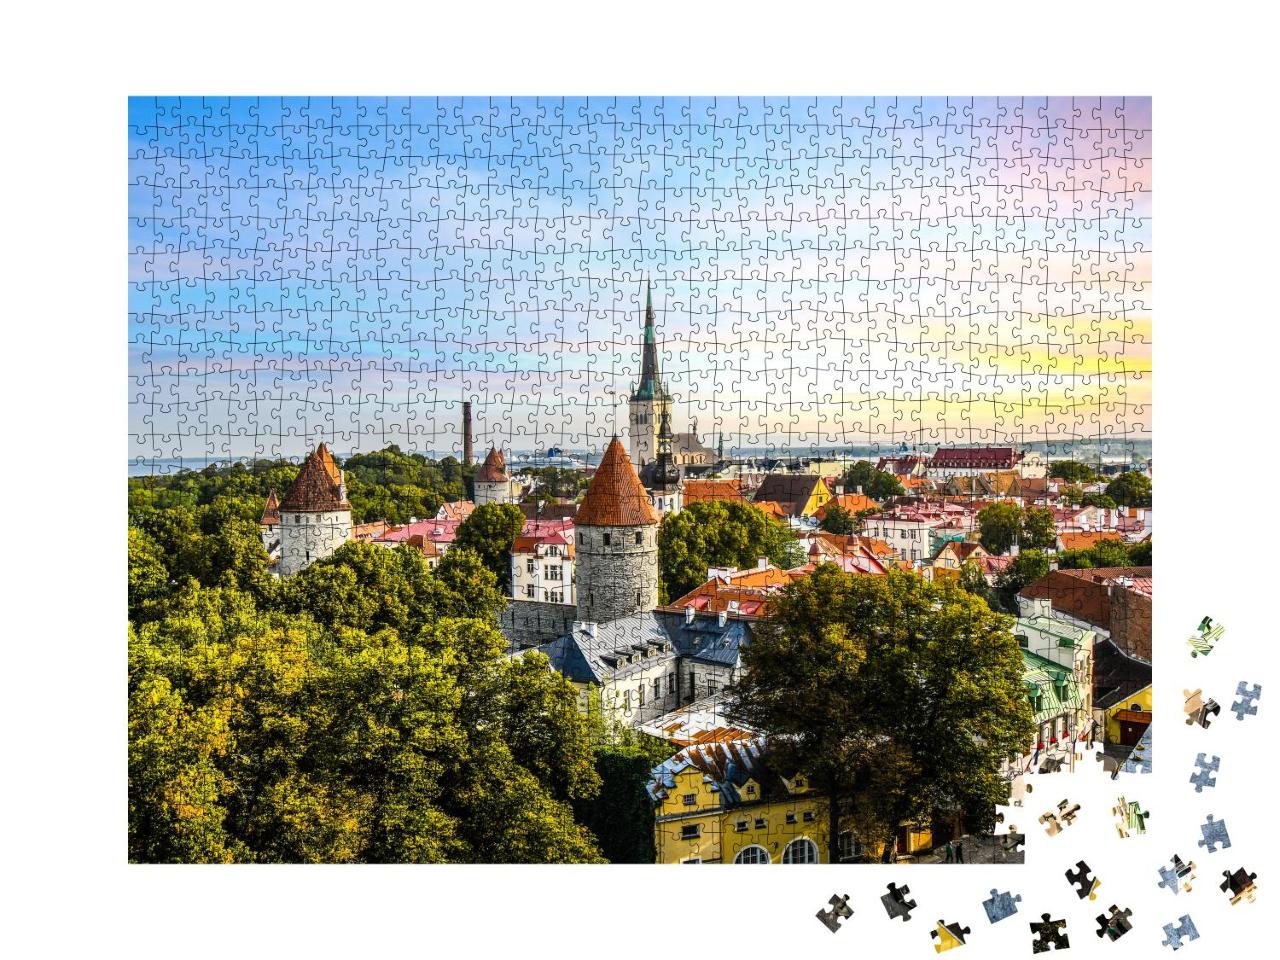 Puzzle 1000 Teile „Blick auf die mittelalterliche Stadt Tallinn in Estland“